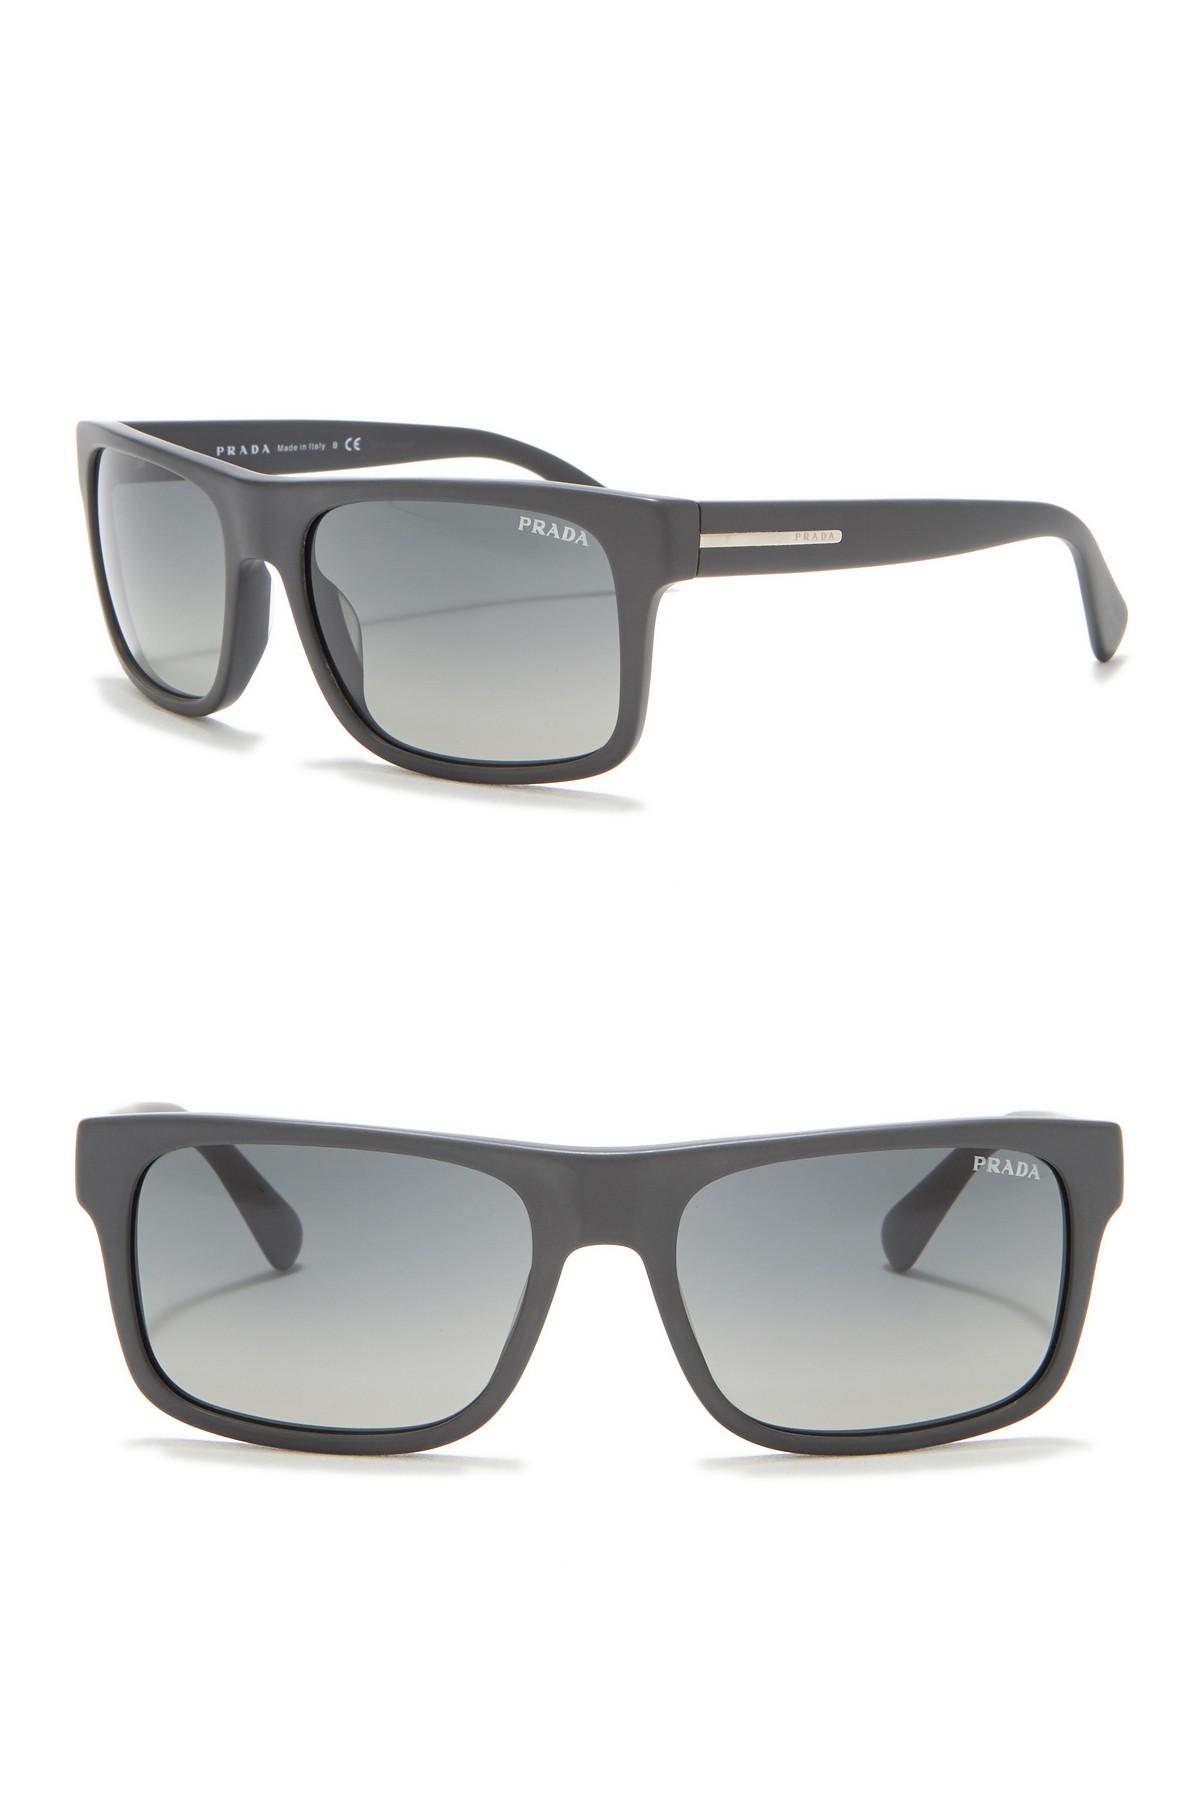 Prada 56mm Rectangle Sunglasses in Gray for Men - Lyst